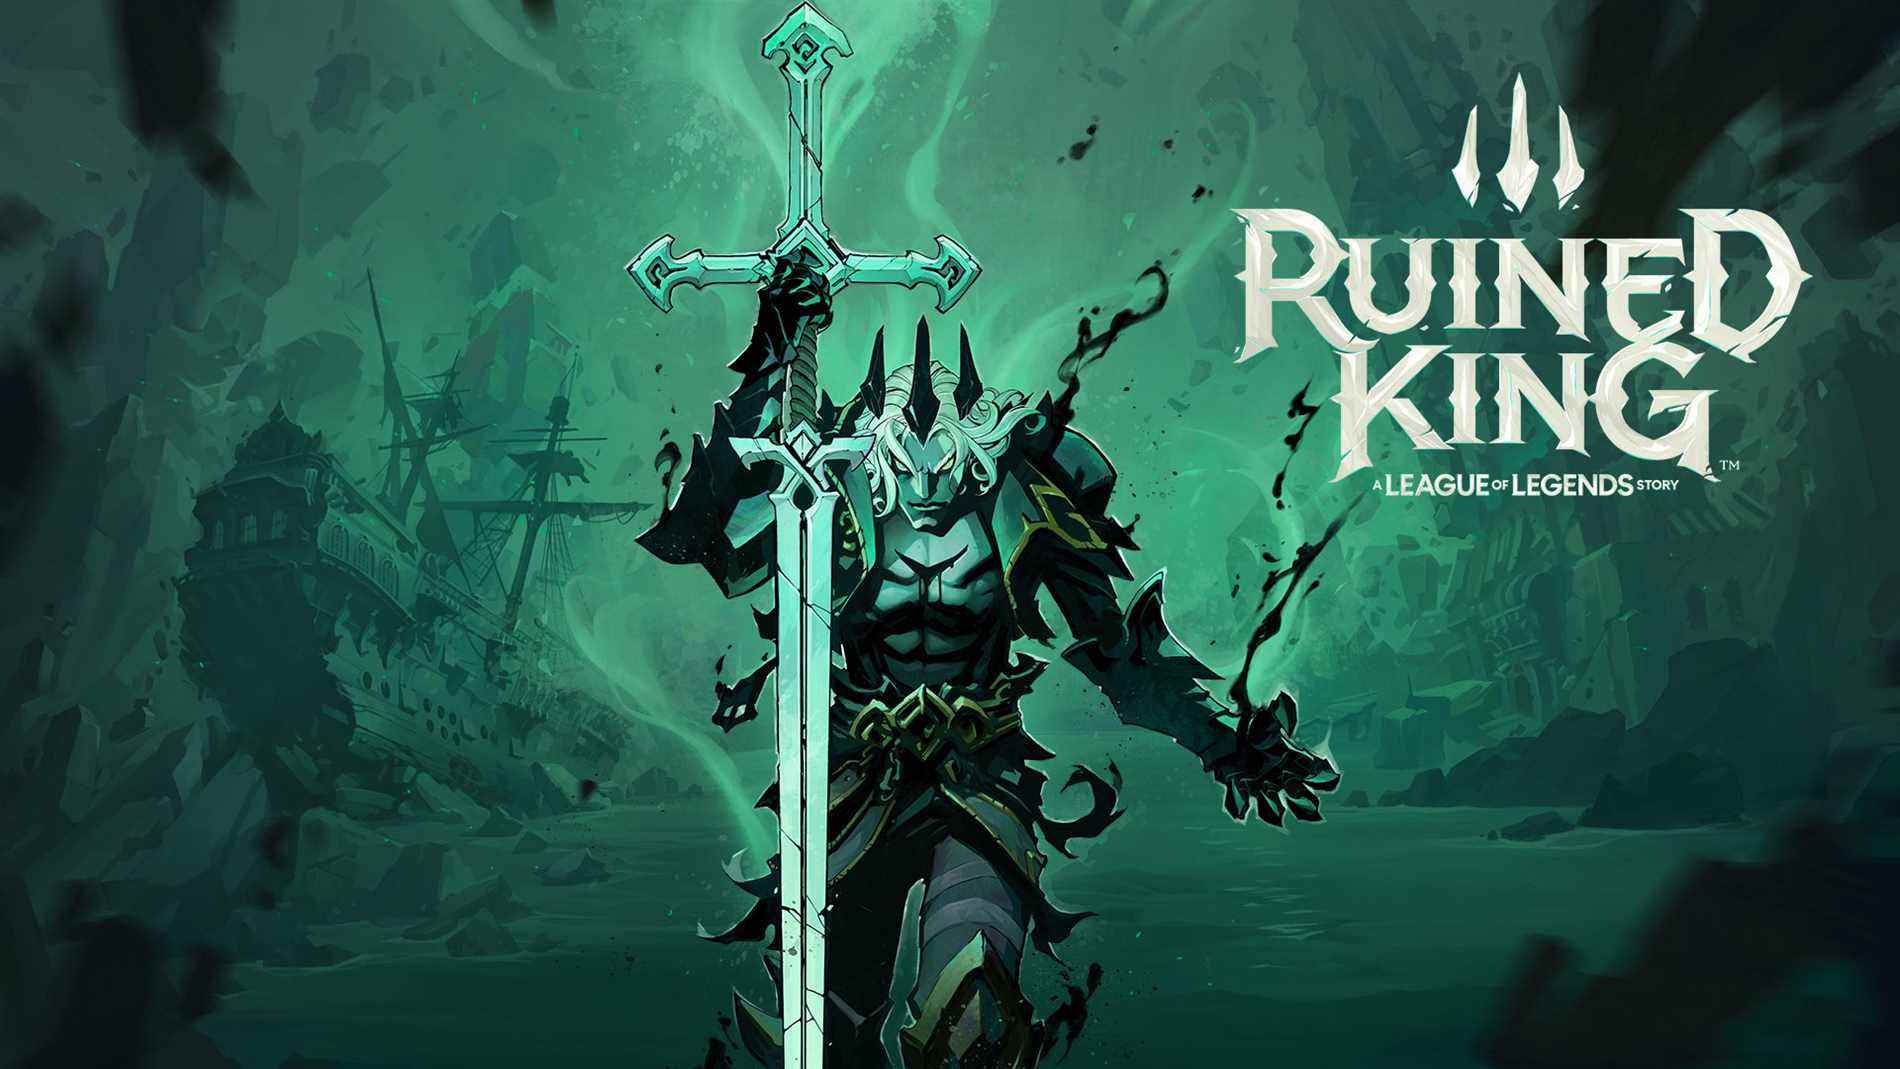 Ruined King : Une histoire de League of Legends